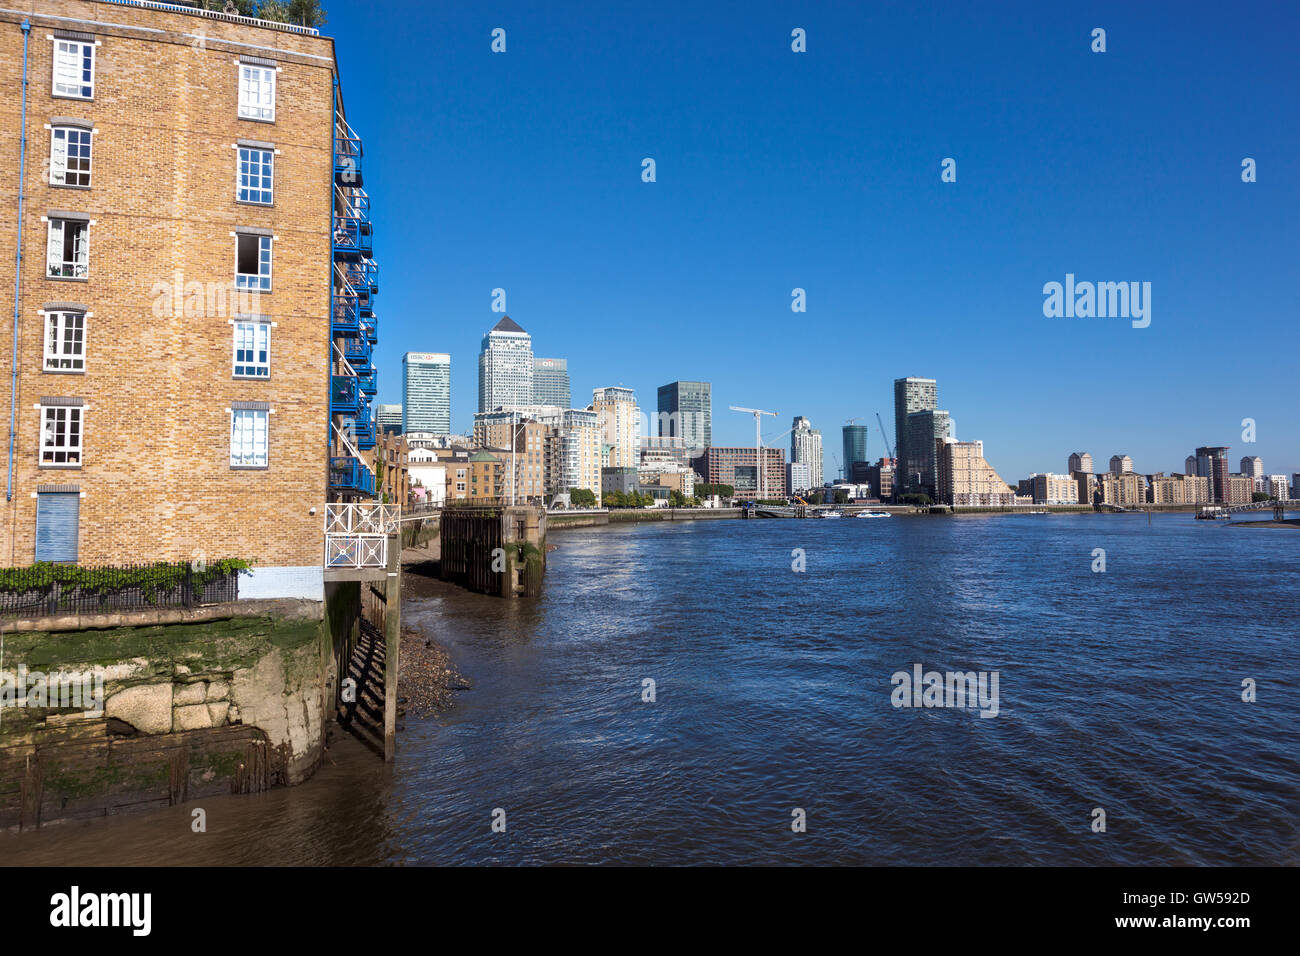 Les gratte-ciel de Canary Wharf vu de la Thames bank à Limehouse, Londres, UK Banque D'Images